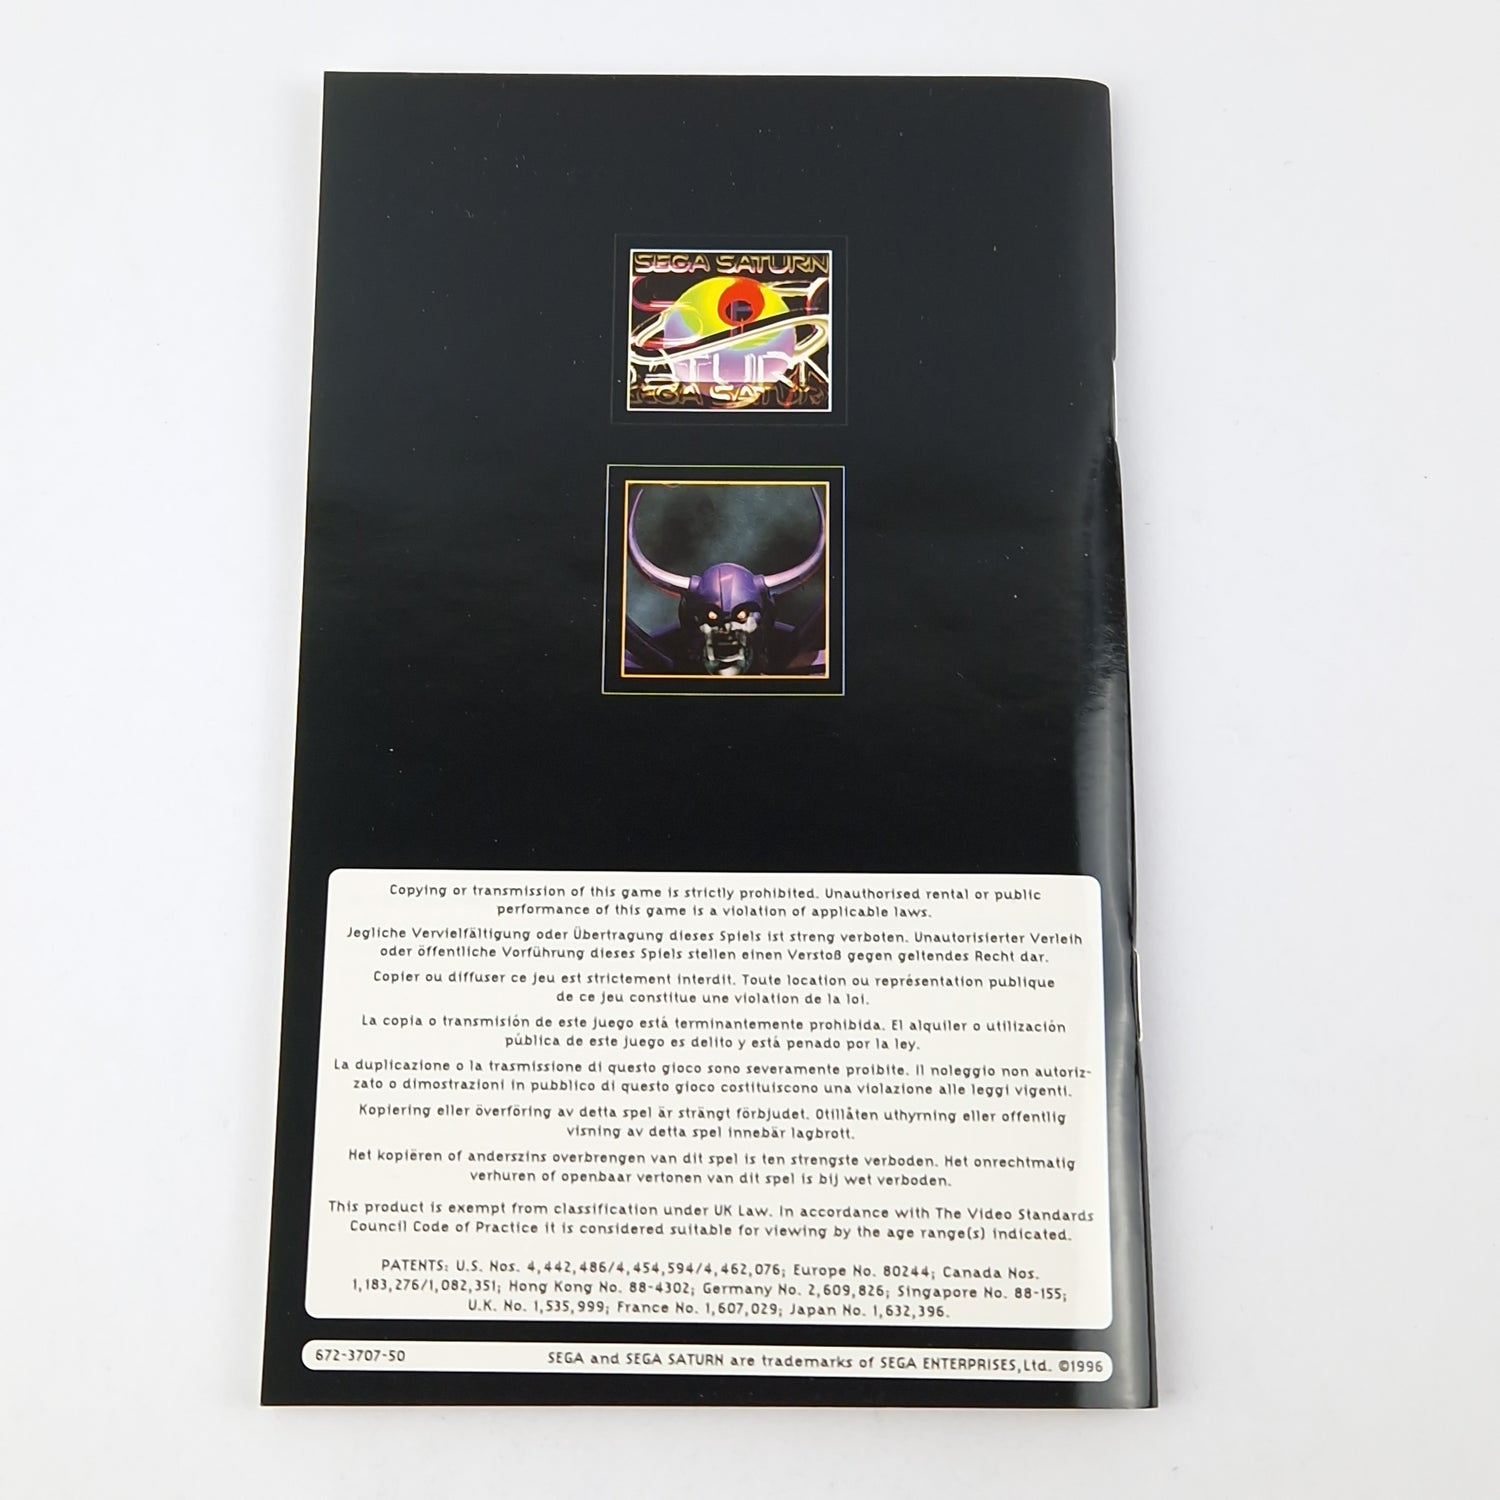 Sega Saturn game: The Story of Thor 2 - CD manual OVP cib | PAL Disk Game